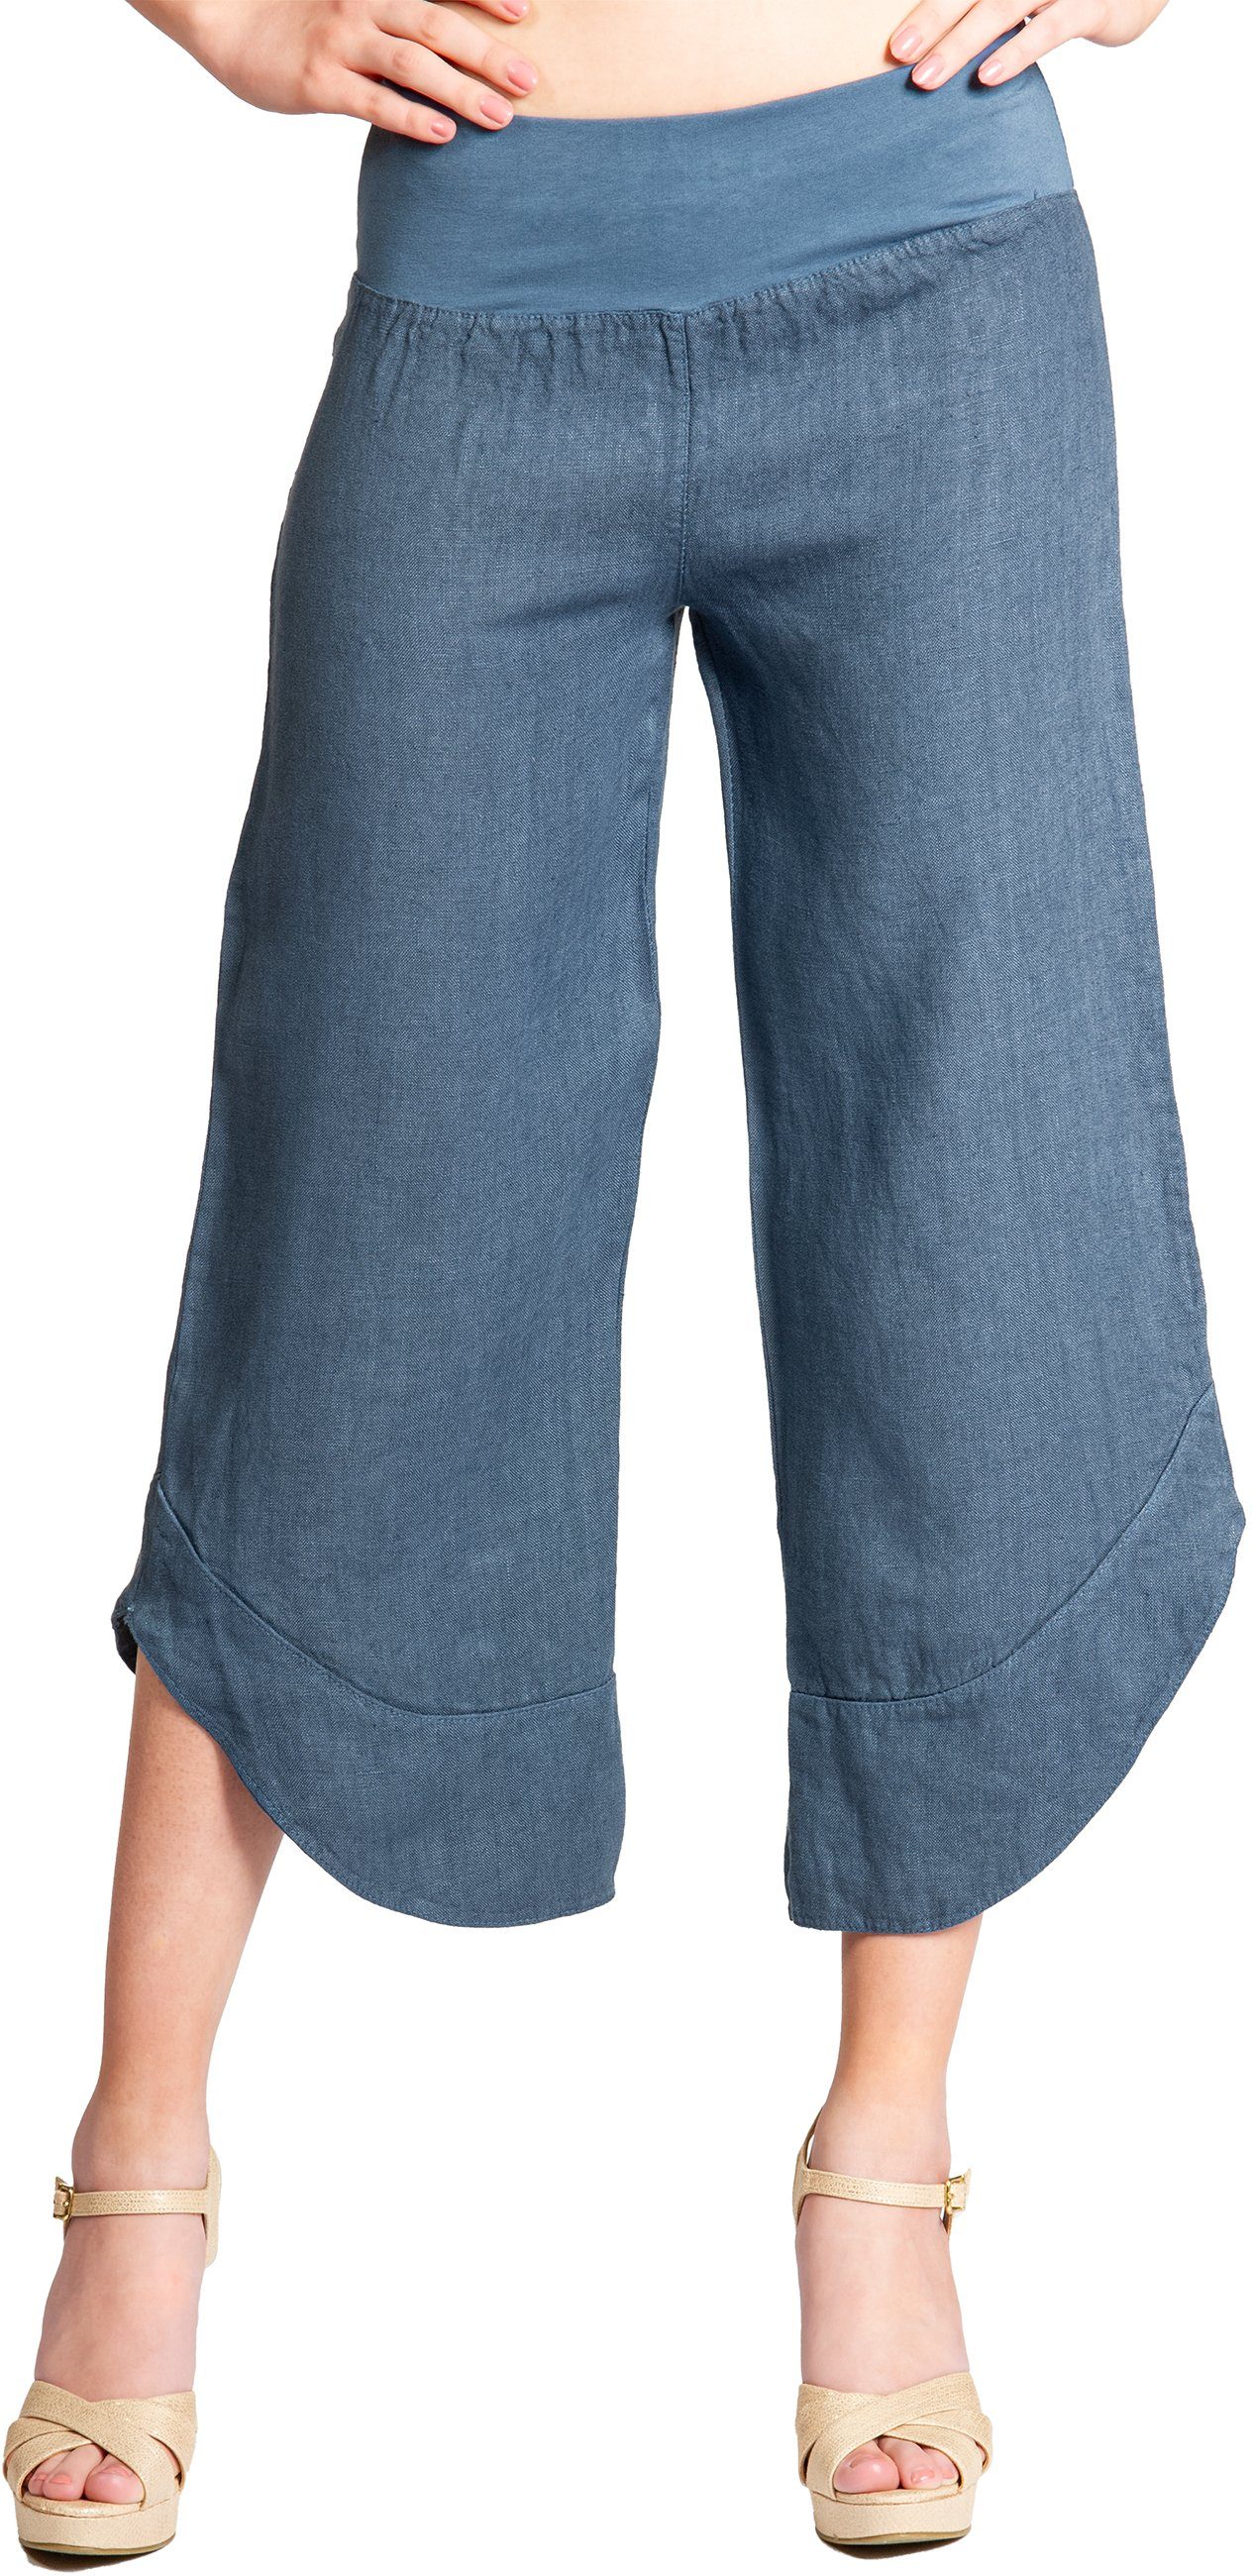 Caspar Leinenhose KHS052 Damen 3/4 Capri Hose aus robustem Leinen jeans blau